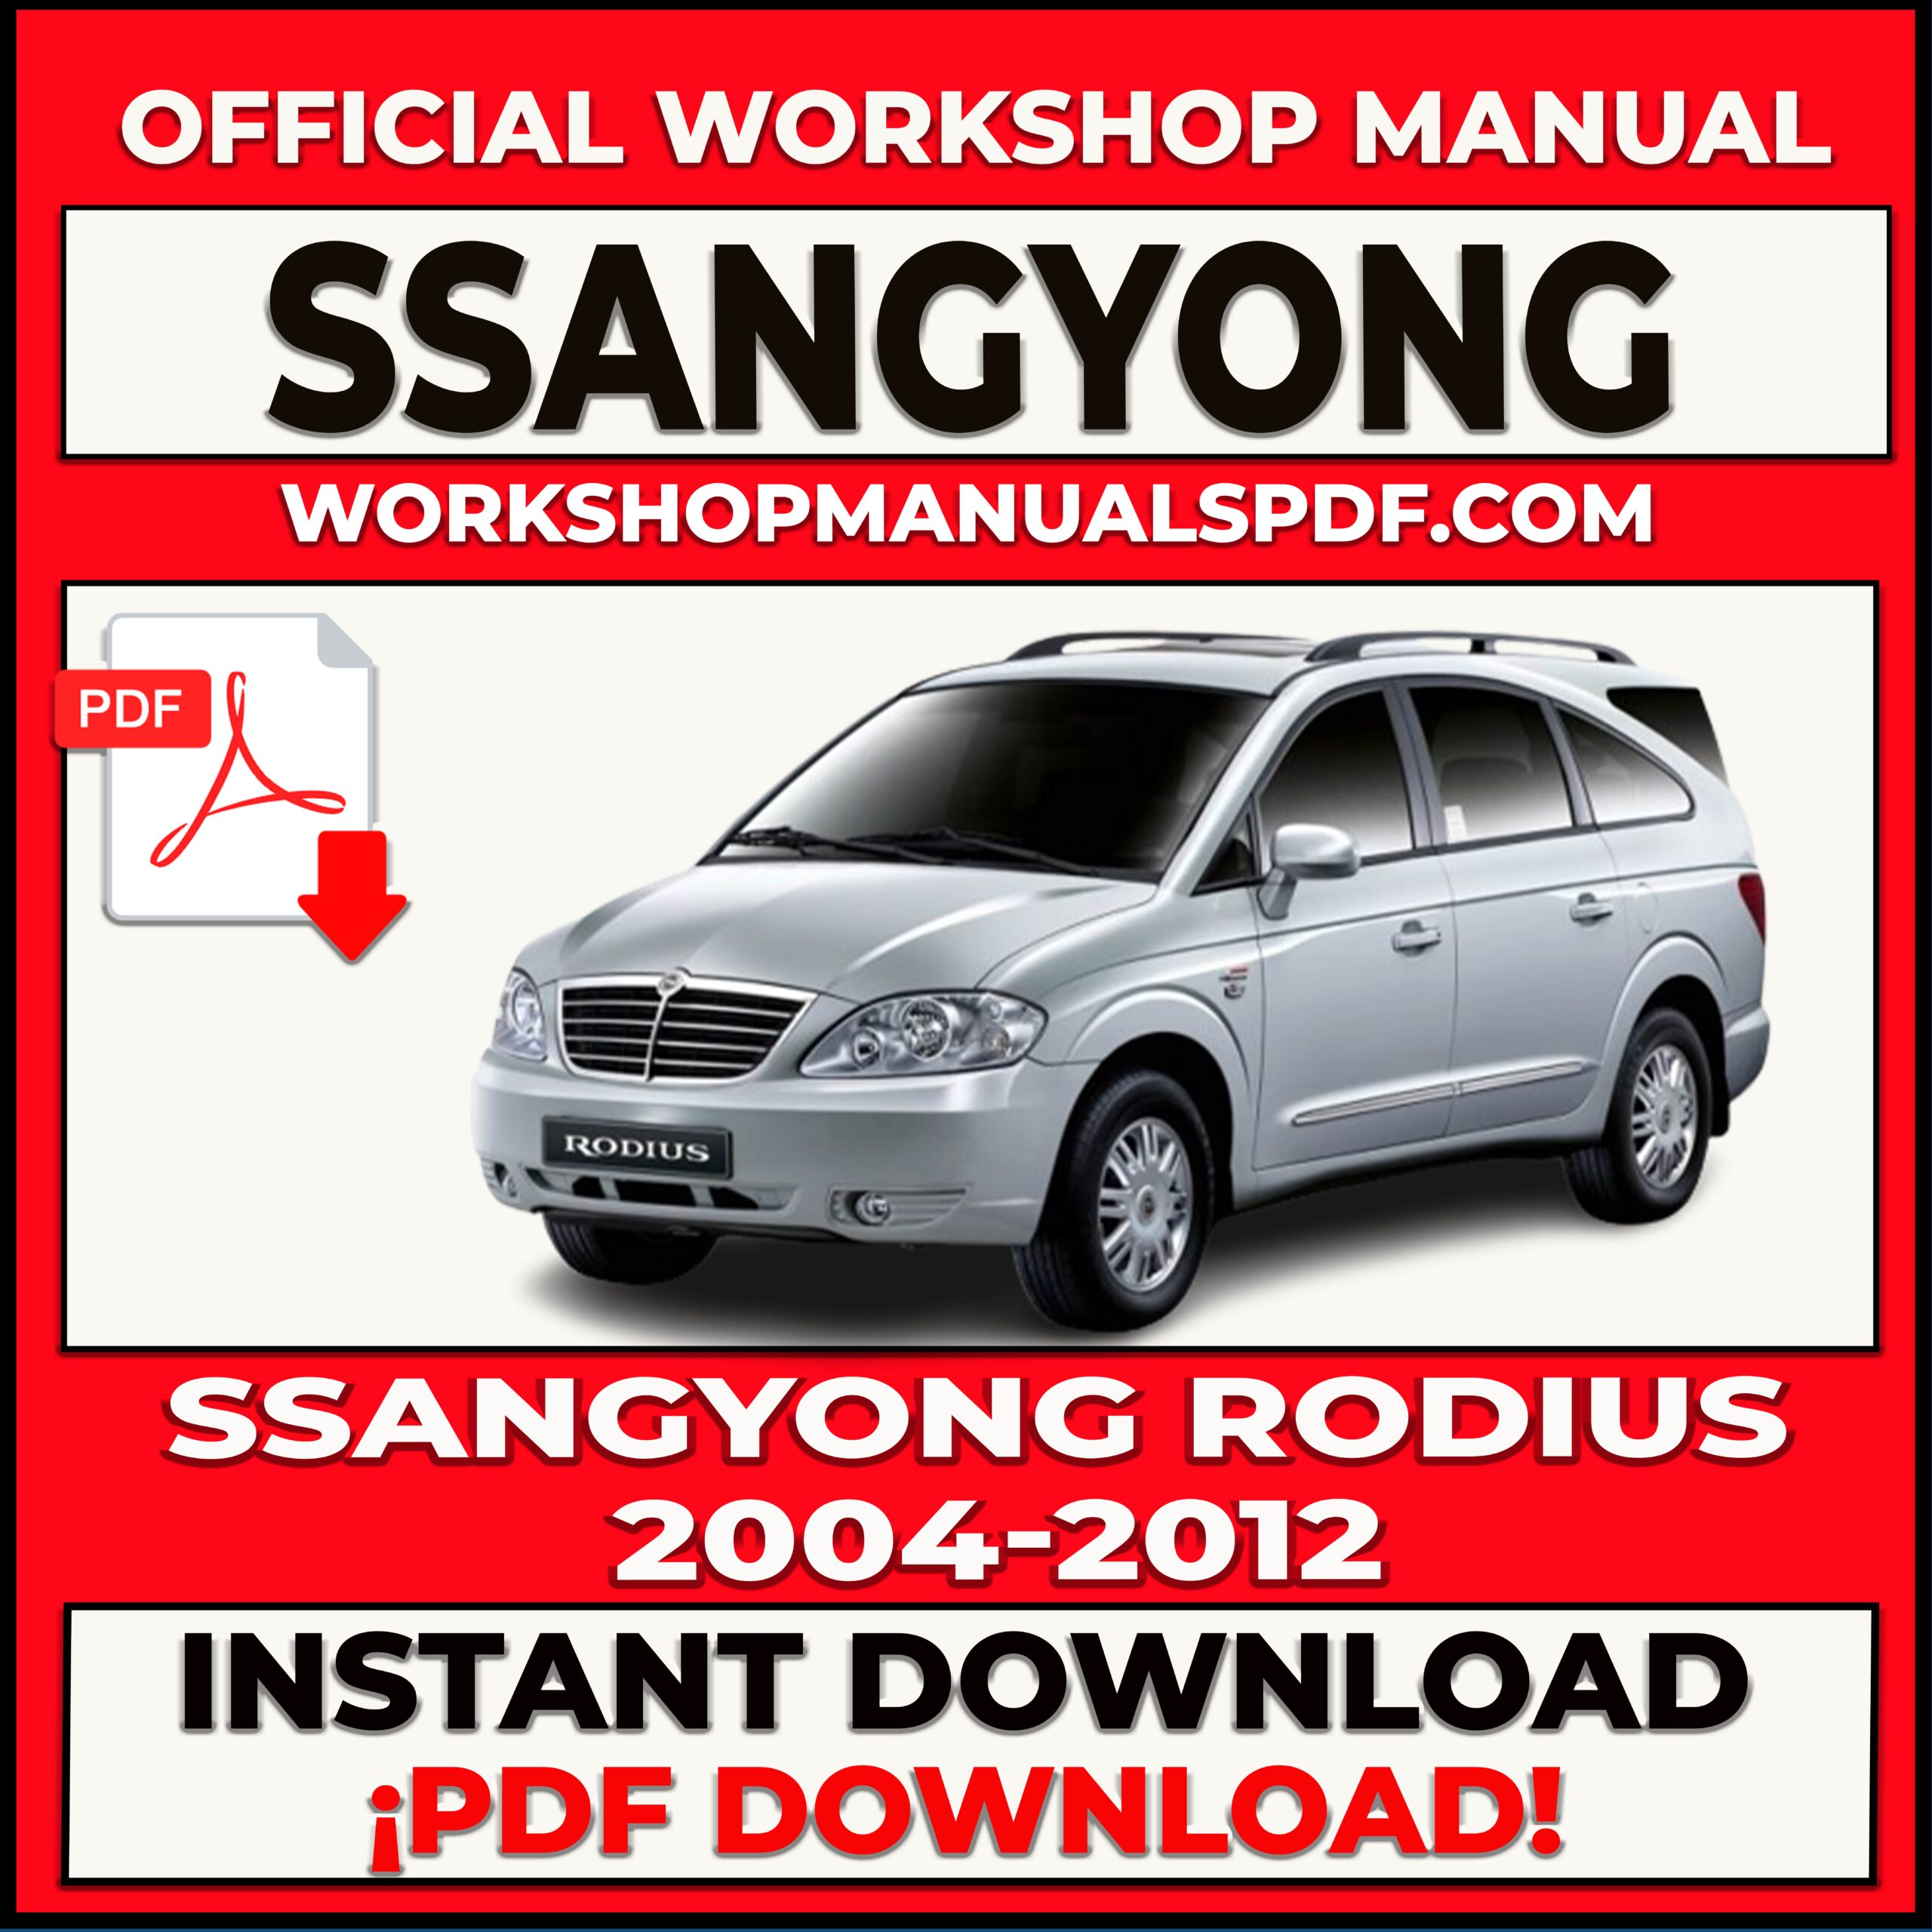 Ssangyong Rodius 2004-2012 Workshop Repair Manual